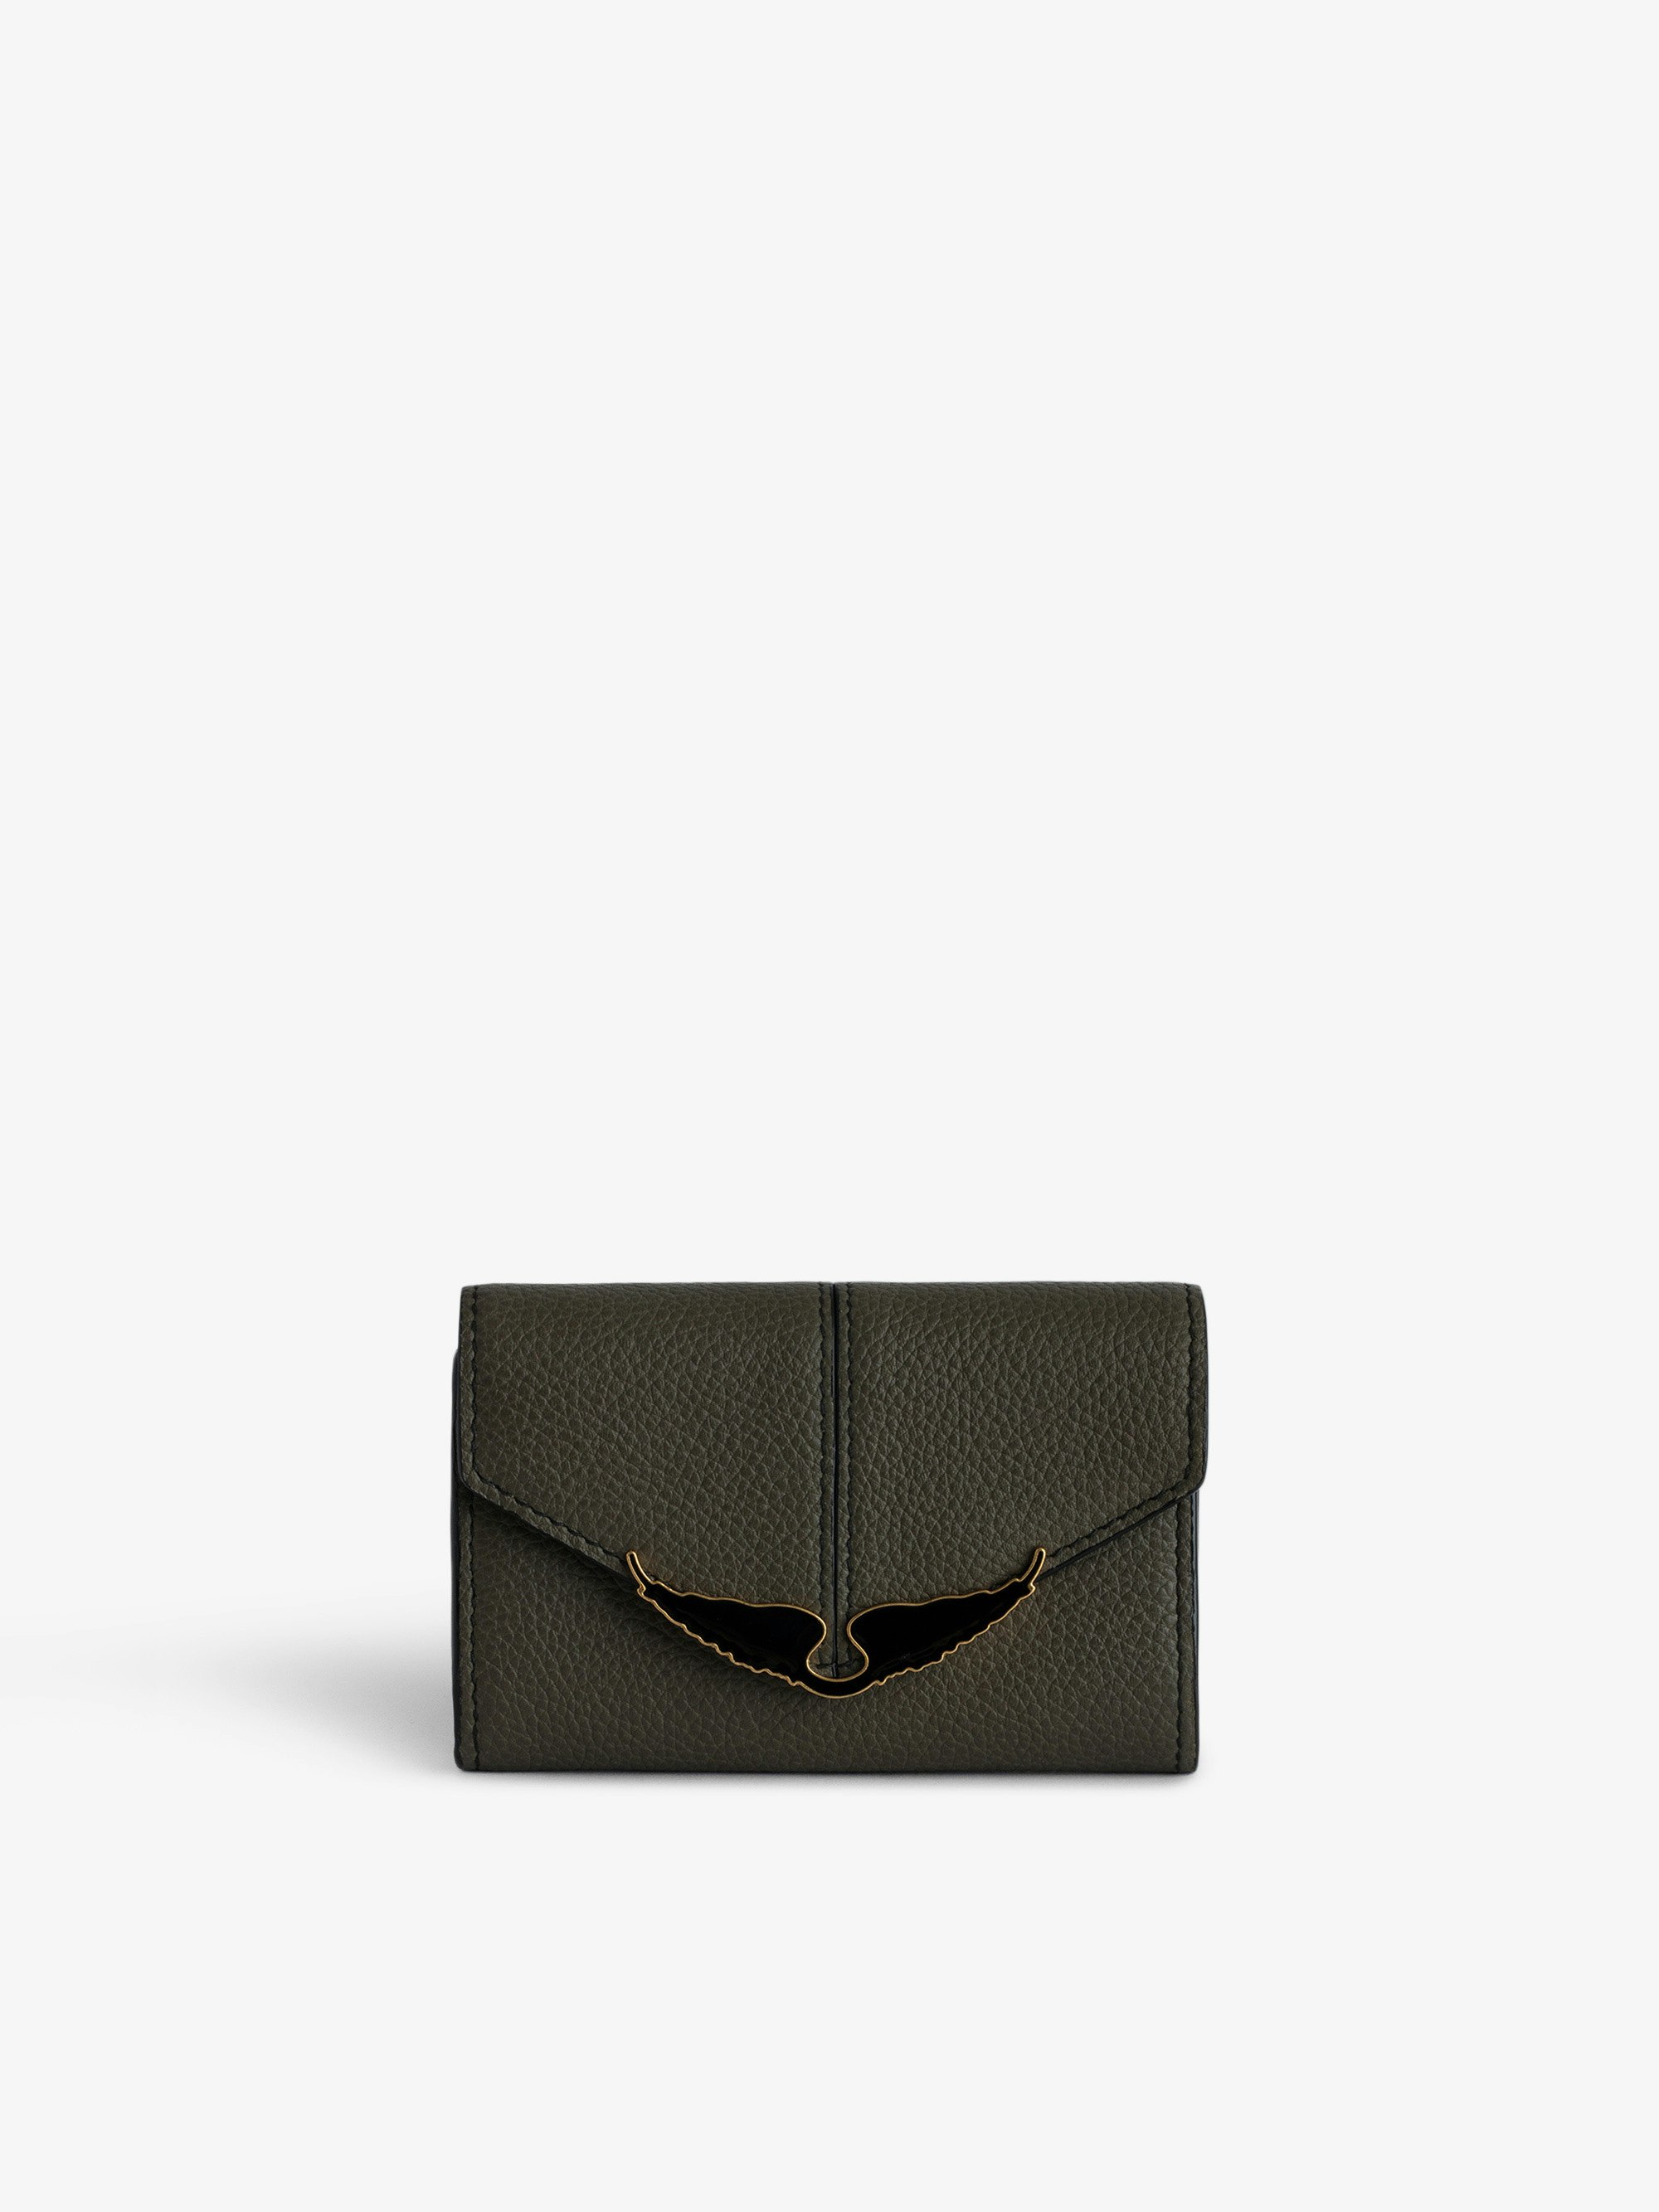 Brieftasche Borderline - Kleine, khakifarbene Brieftasche aus gnarbtem Leder mit Klappe und lackierten Flügeln.